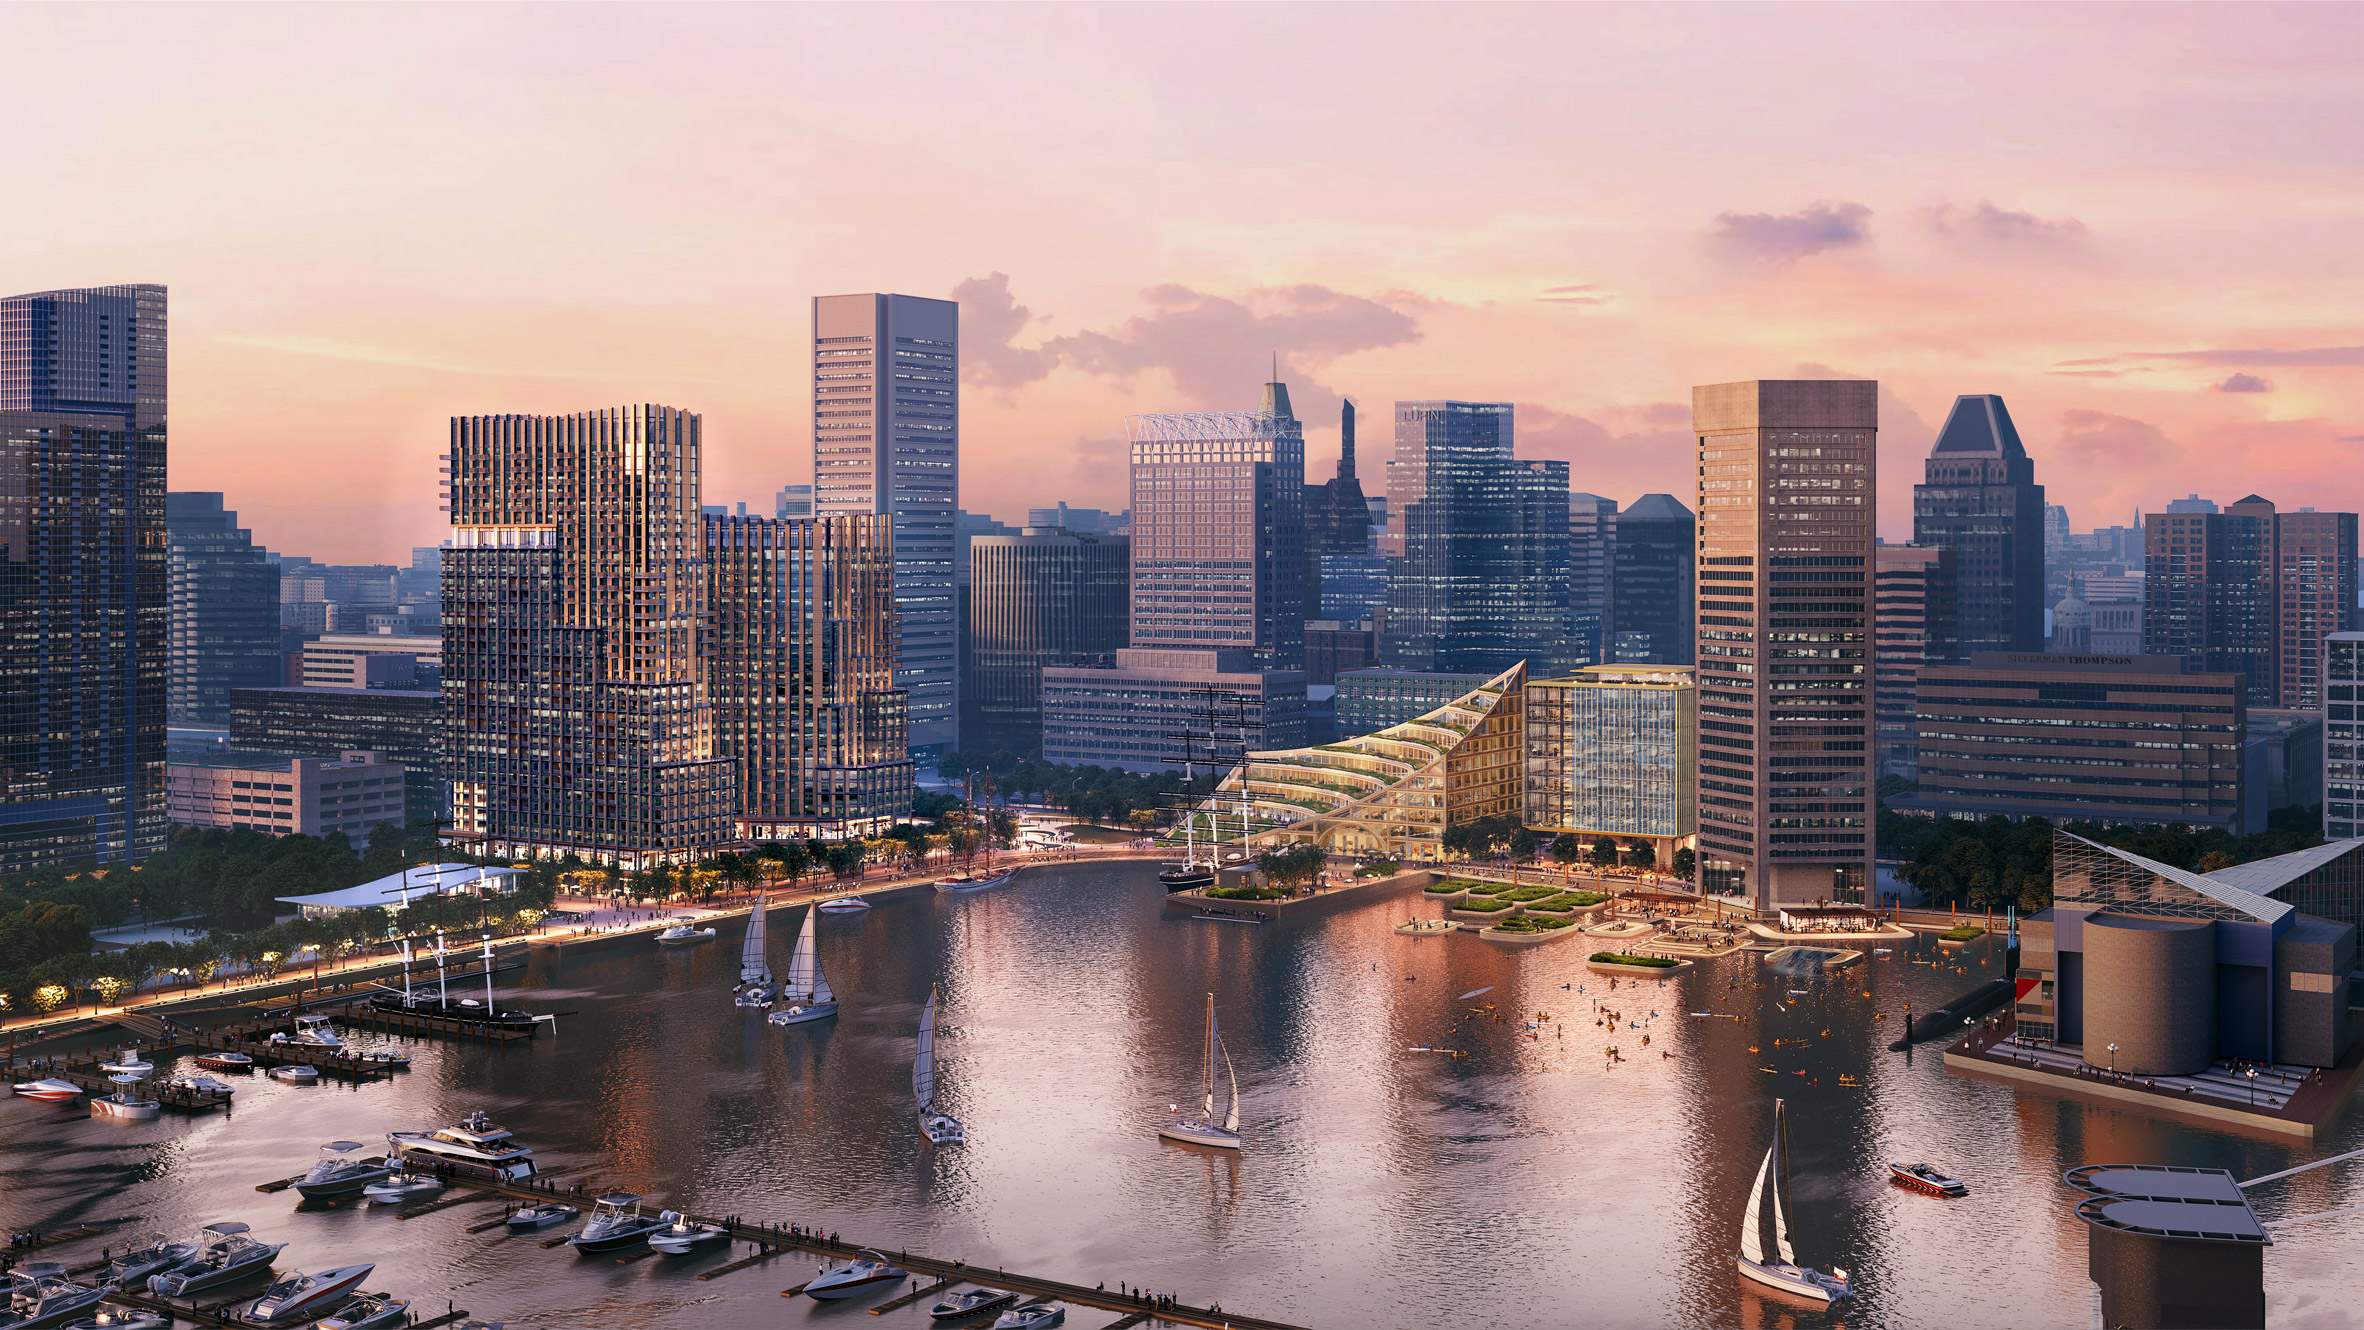 Master plan for redevelopment of Baltimore inner harbor